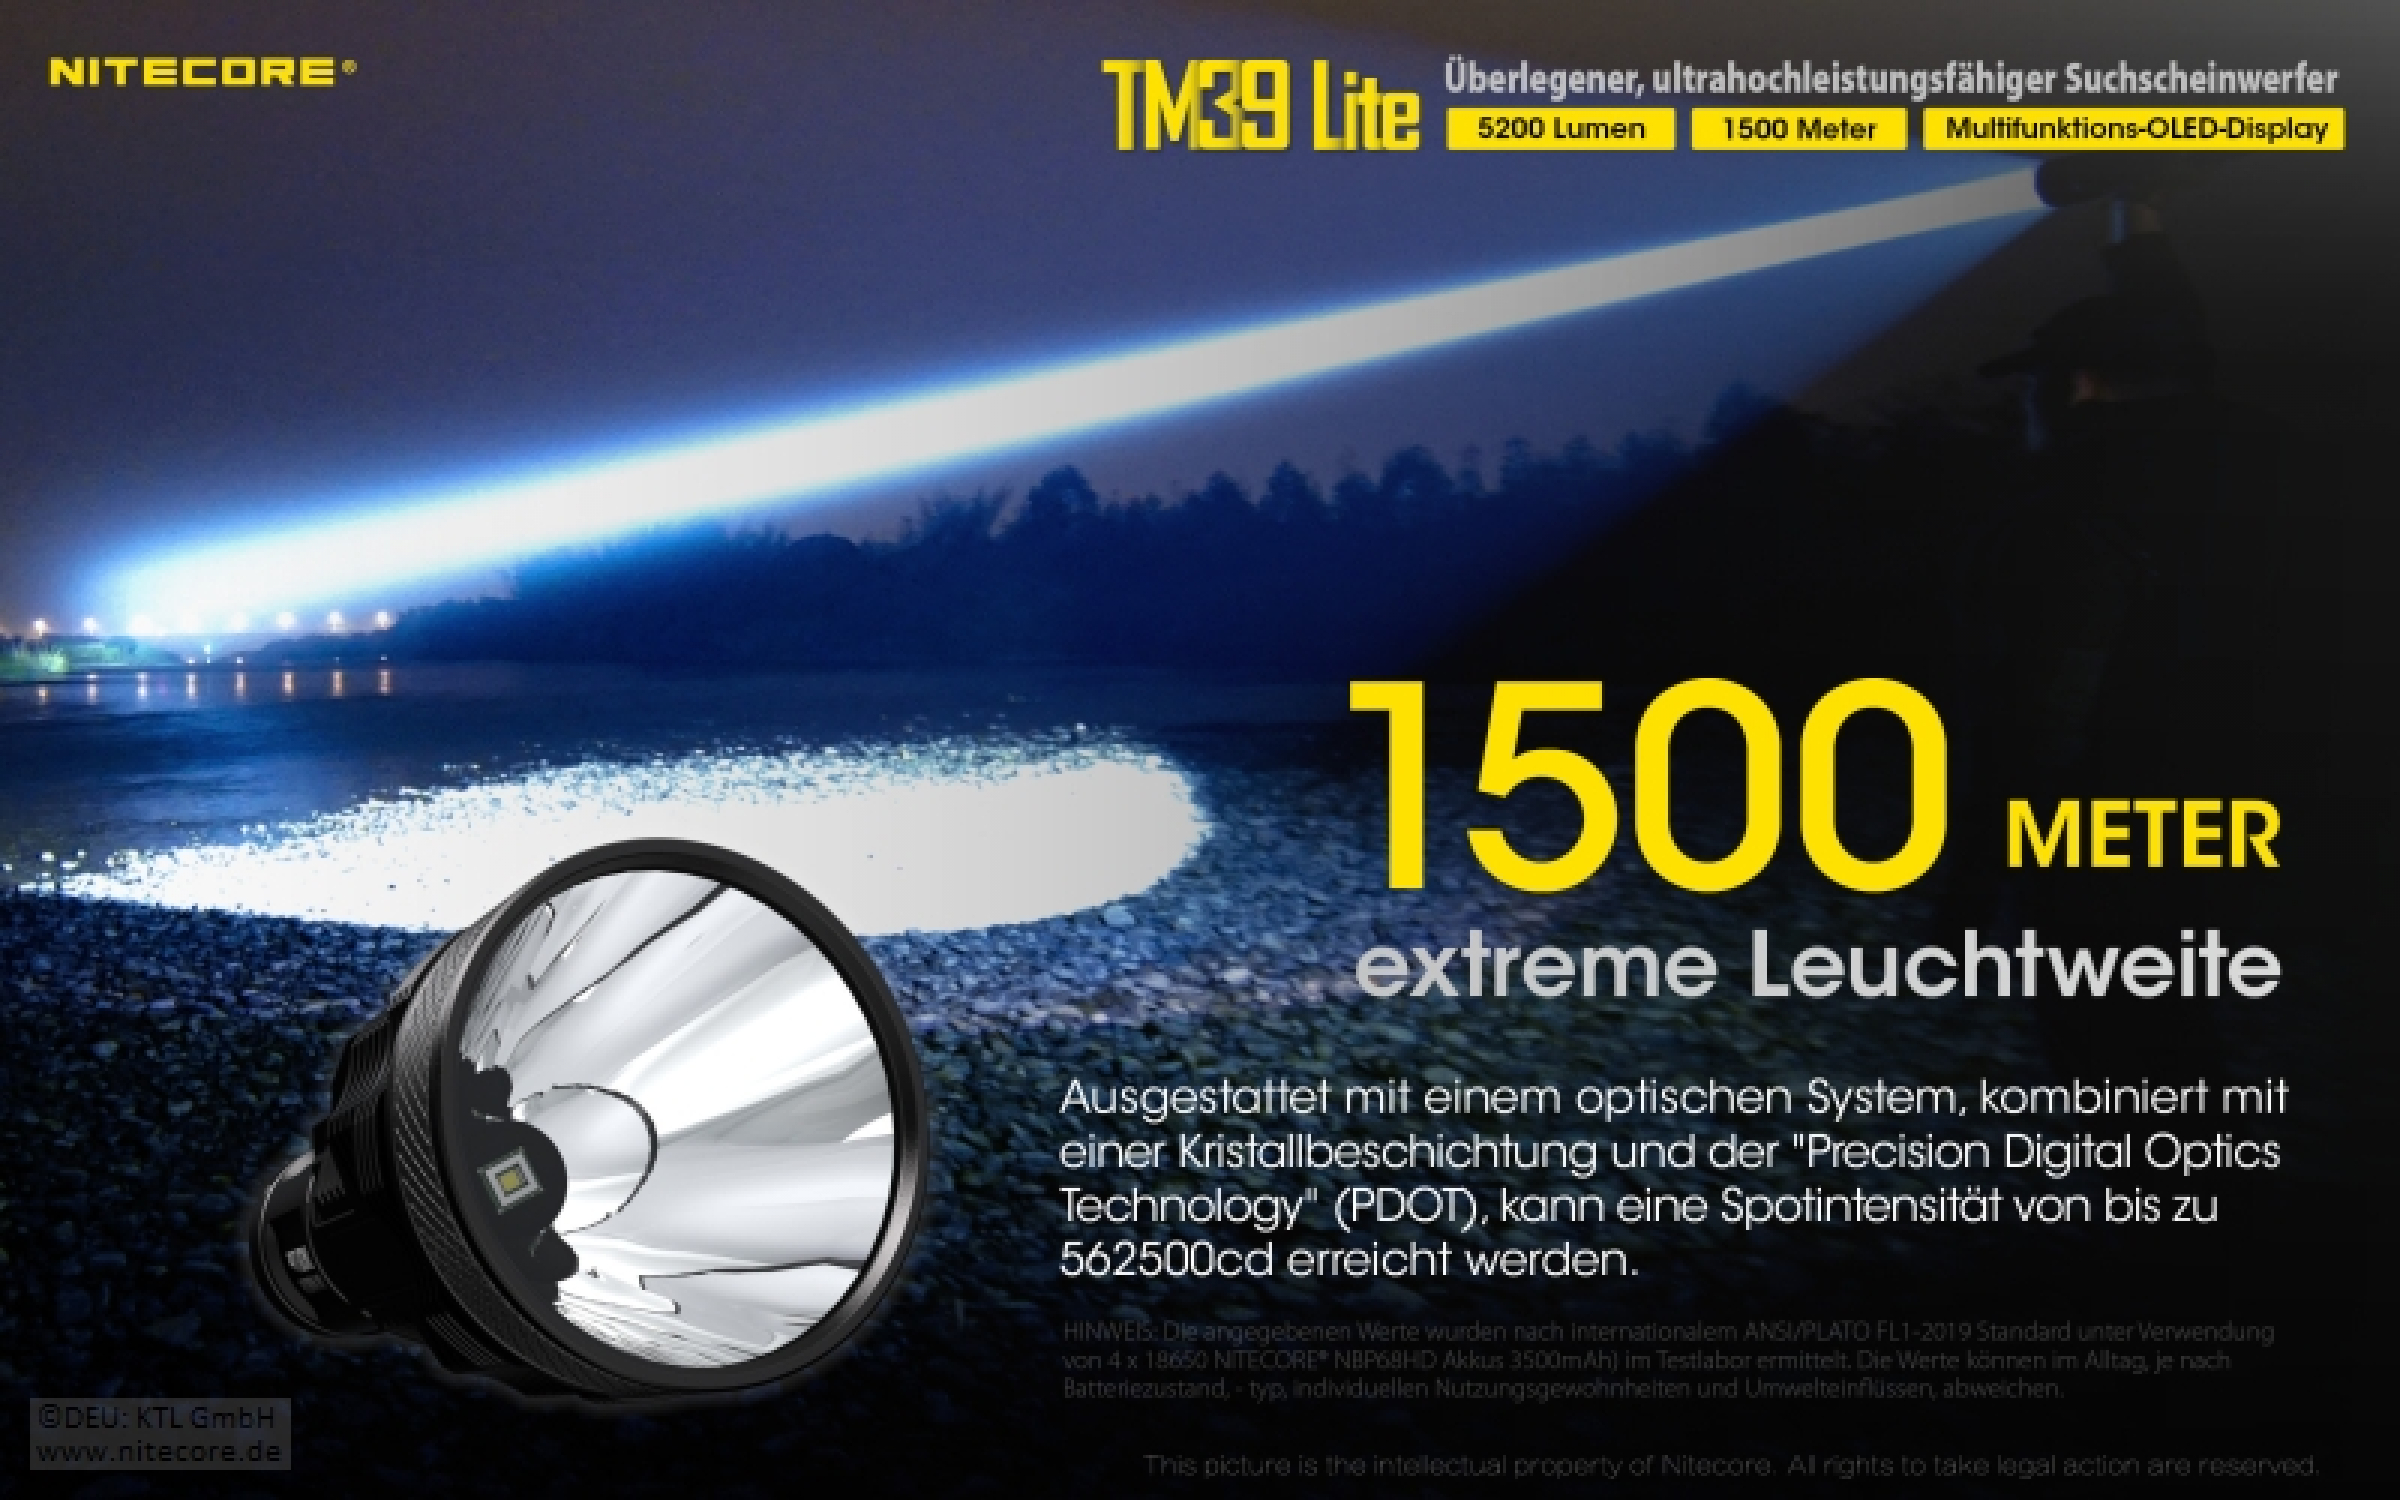 Nitecore Pro Taschenlampe TM39 Lite - 5200 Lumen